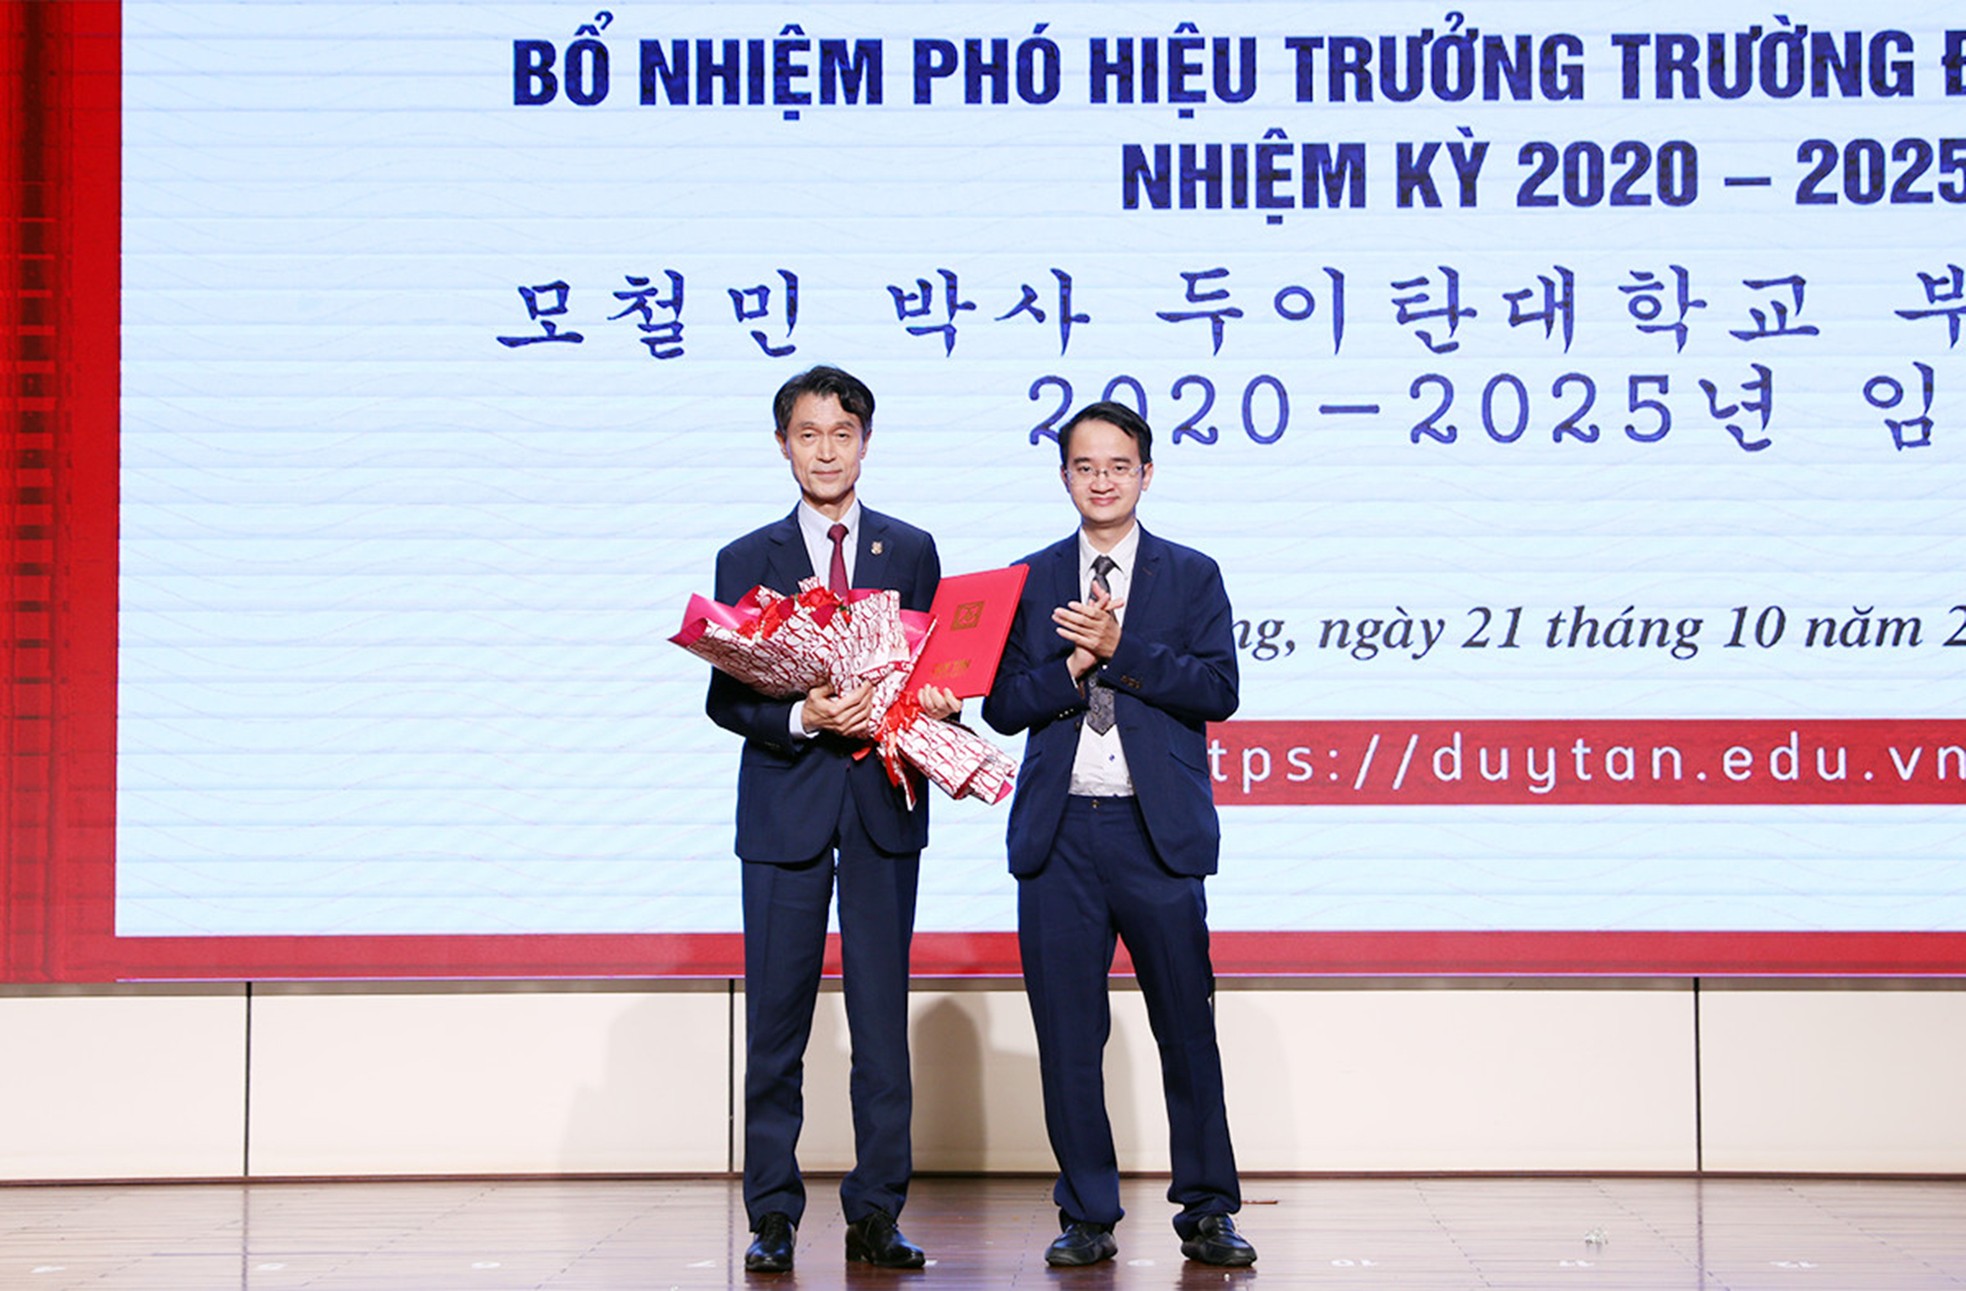 Nhóm sinh viên Đại học Duy Tân giành giải Nhì "Bệ phóng khởi nghiệp" Anh-4-3451